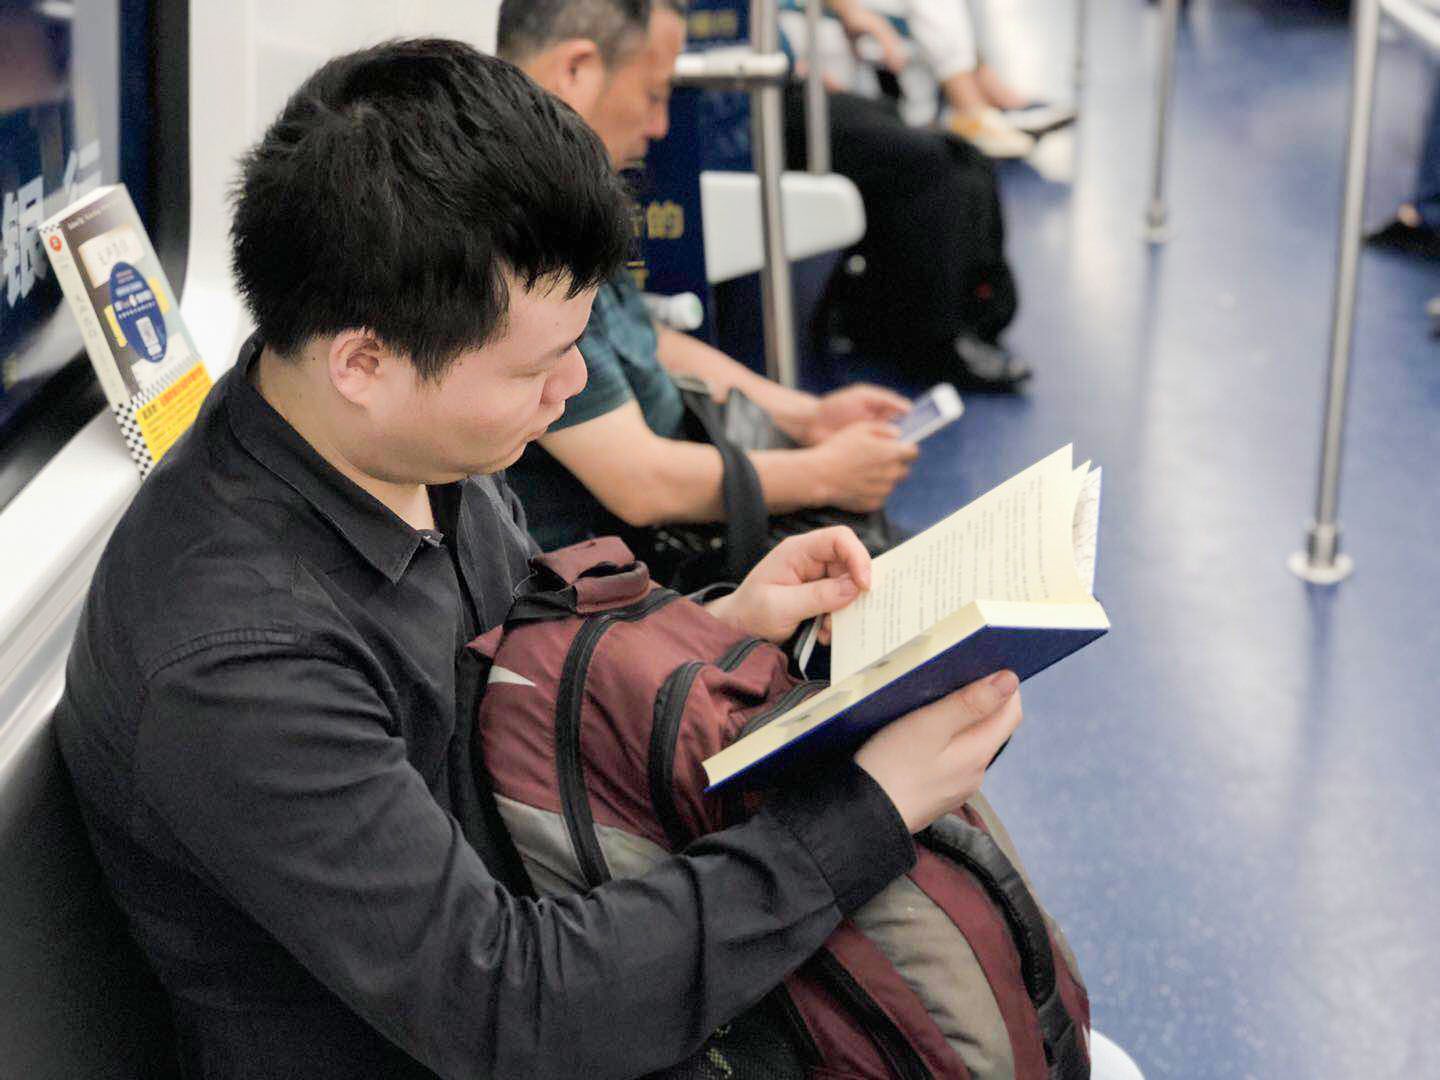 在长沙地铁的车厢里，漂流图书得到乘客们广泛认可。 长沙晚报全媒体记者 孙占锋 通讯员 但妲 摄